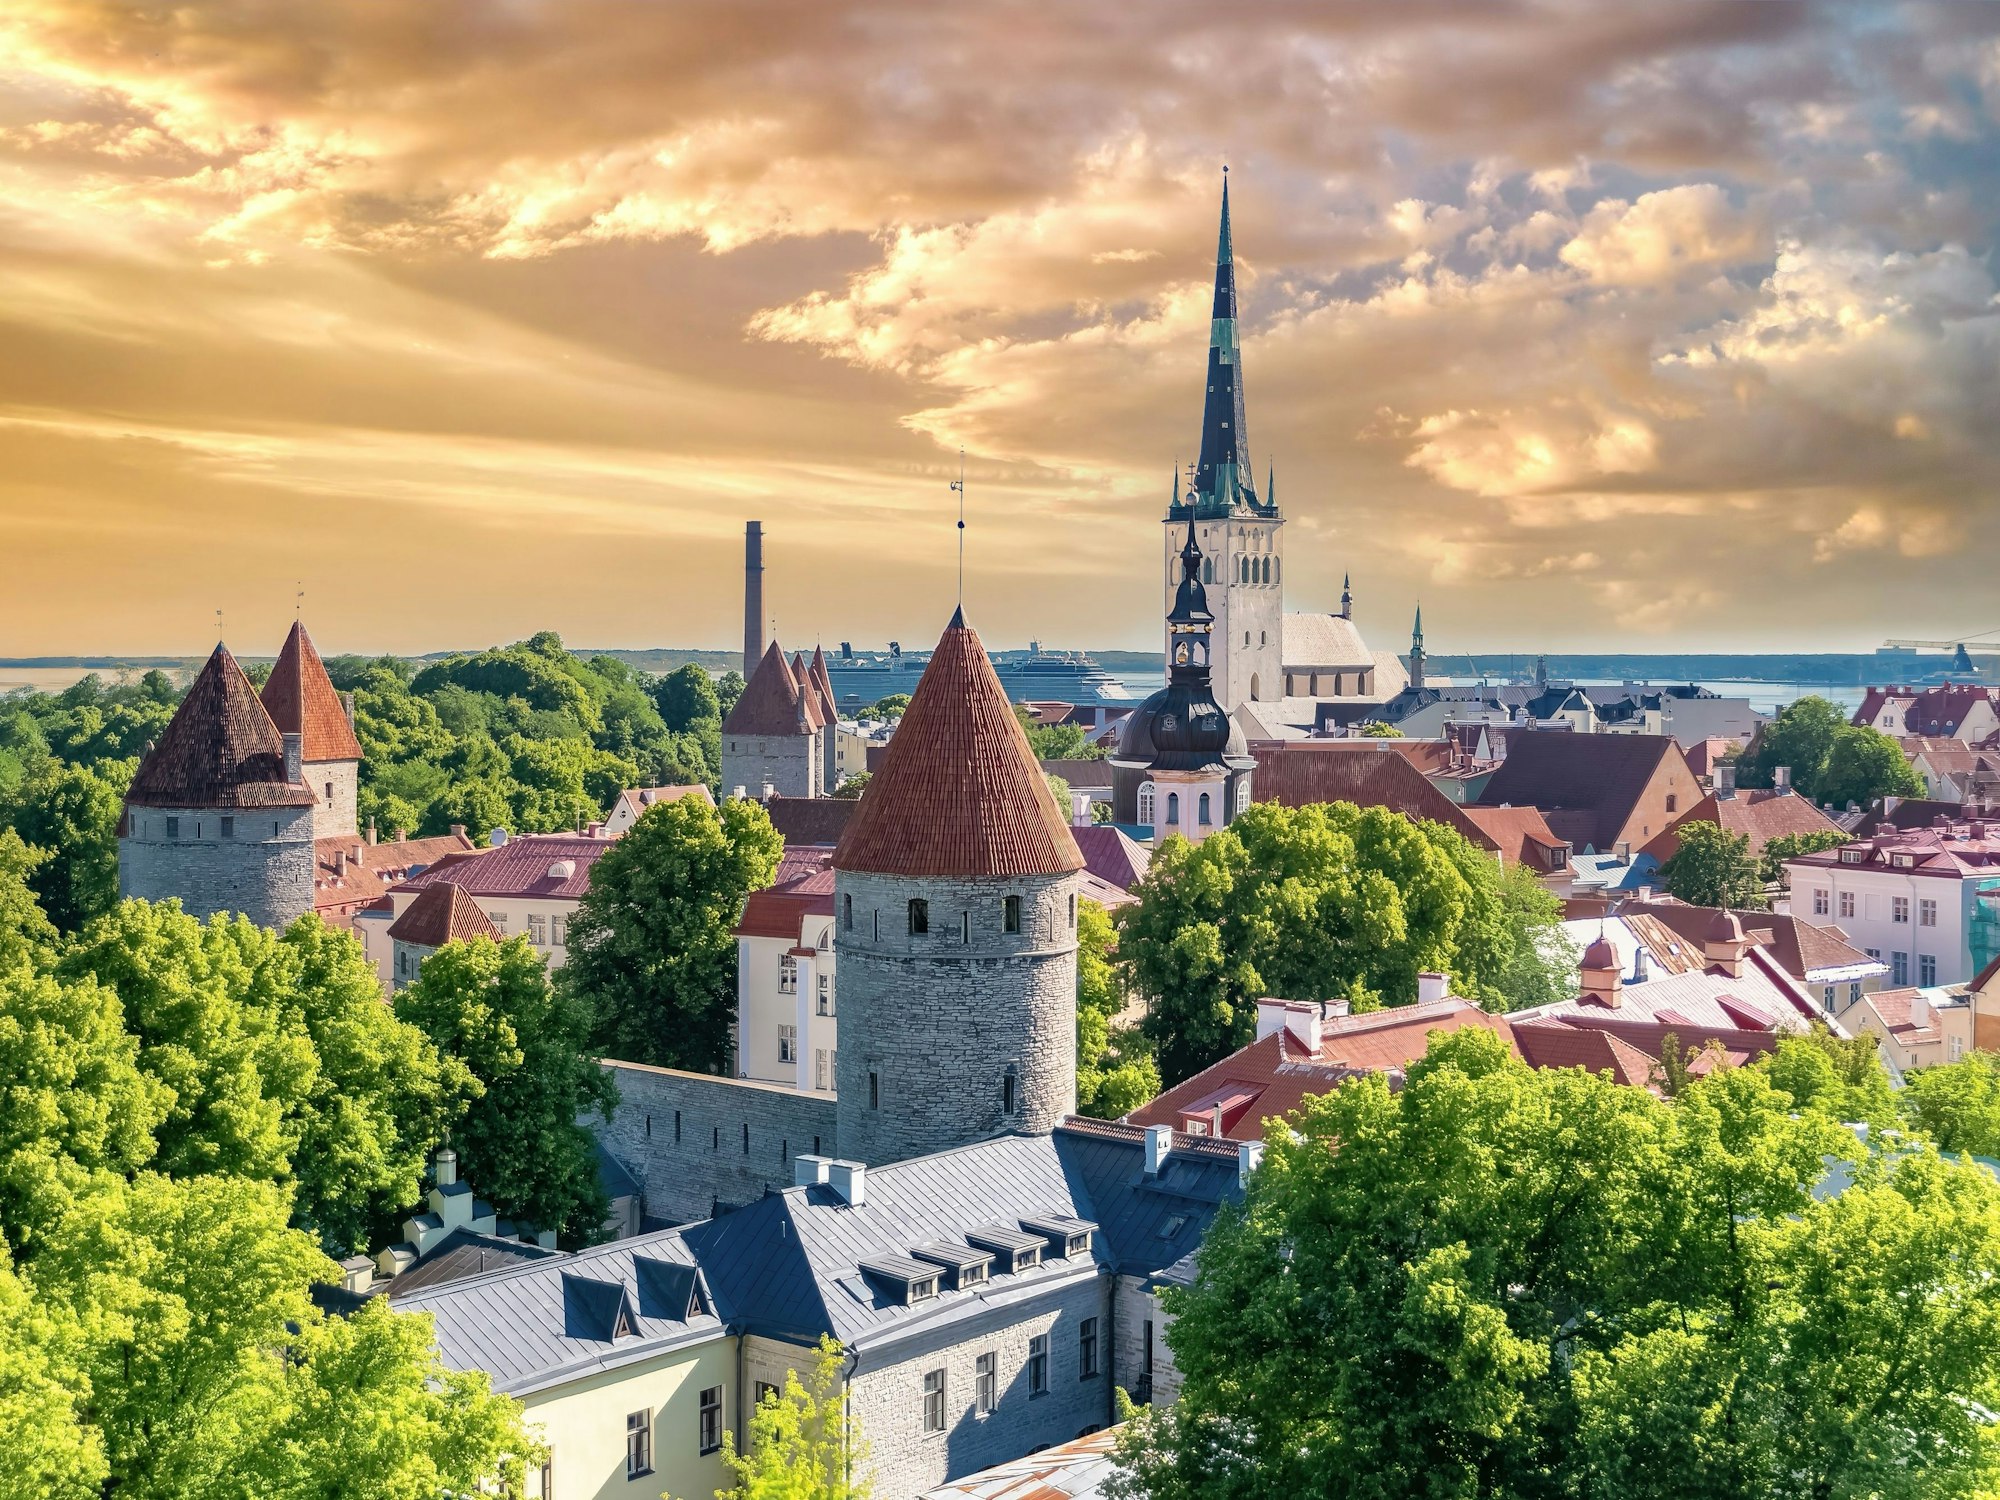 Tallinn in Estland, Blick auf die mittelalterliche Stadt mit der Sankt-Nikolaus-Kirche, bunten Häusern und typischen Türmen.